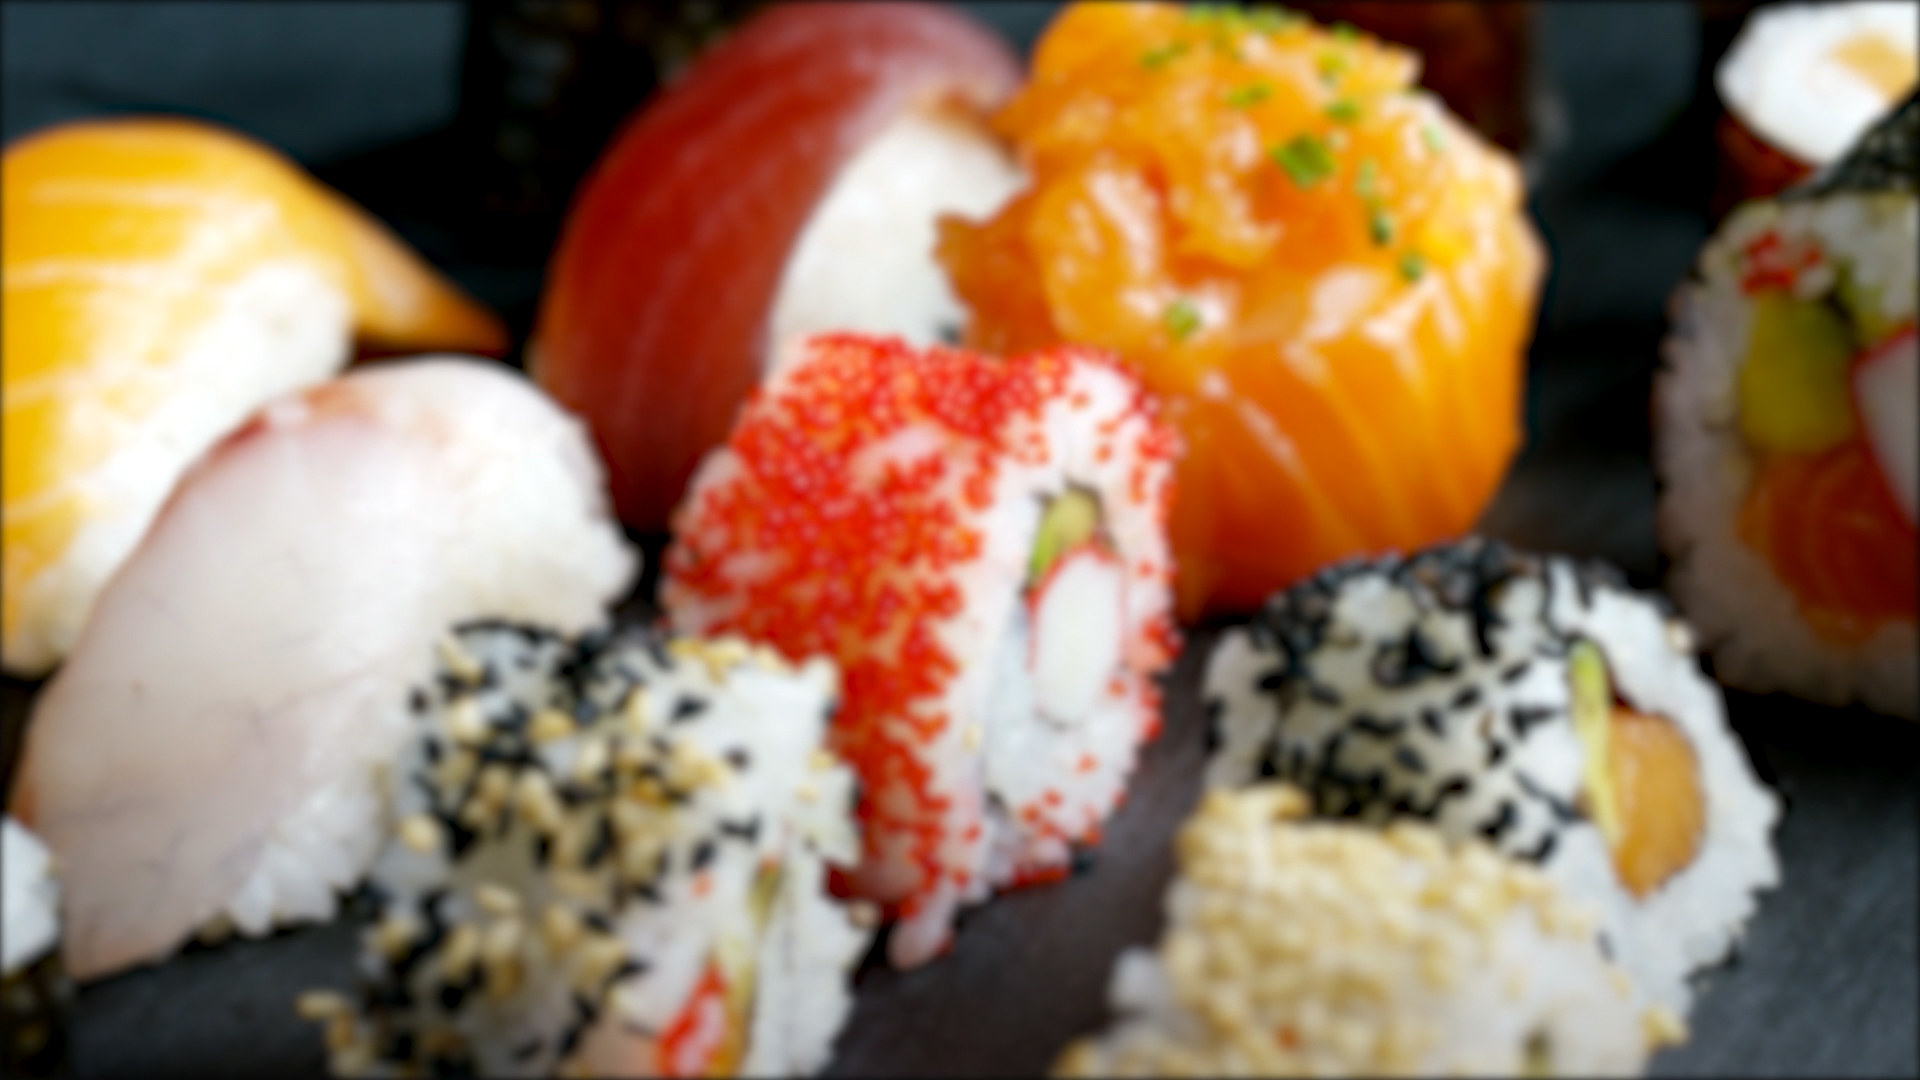 日本の 寿司 がブラジルですごい進化を遂げていた